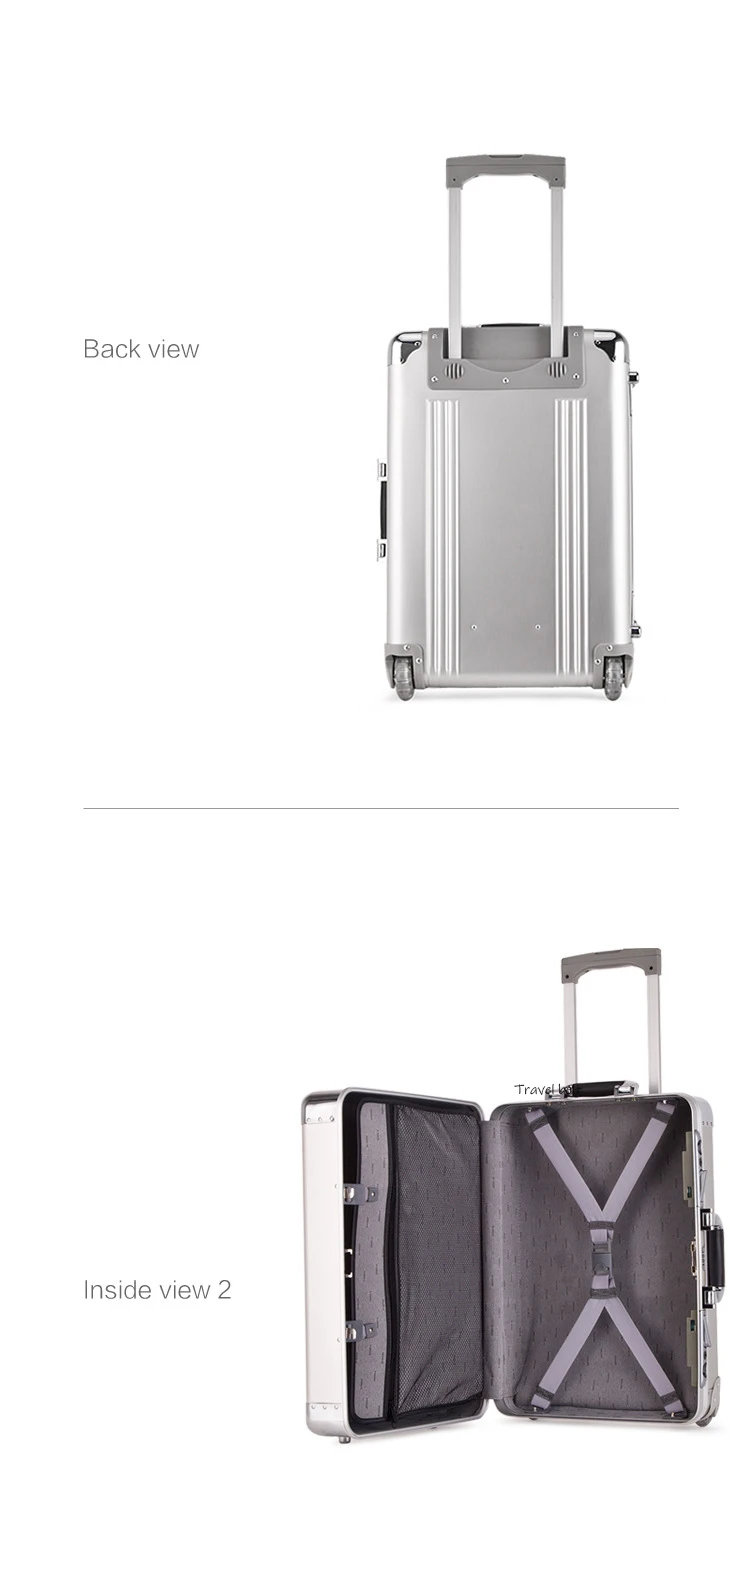 Алюминиево-магниевый сплав класса люкс Высокое качество 20 дюймов размер высокое качество багаж на колесиках фирменный туристический чемодан на вращающихся колесиках